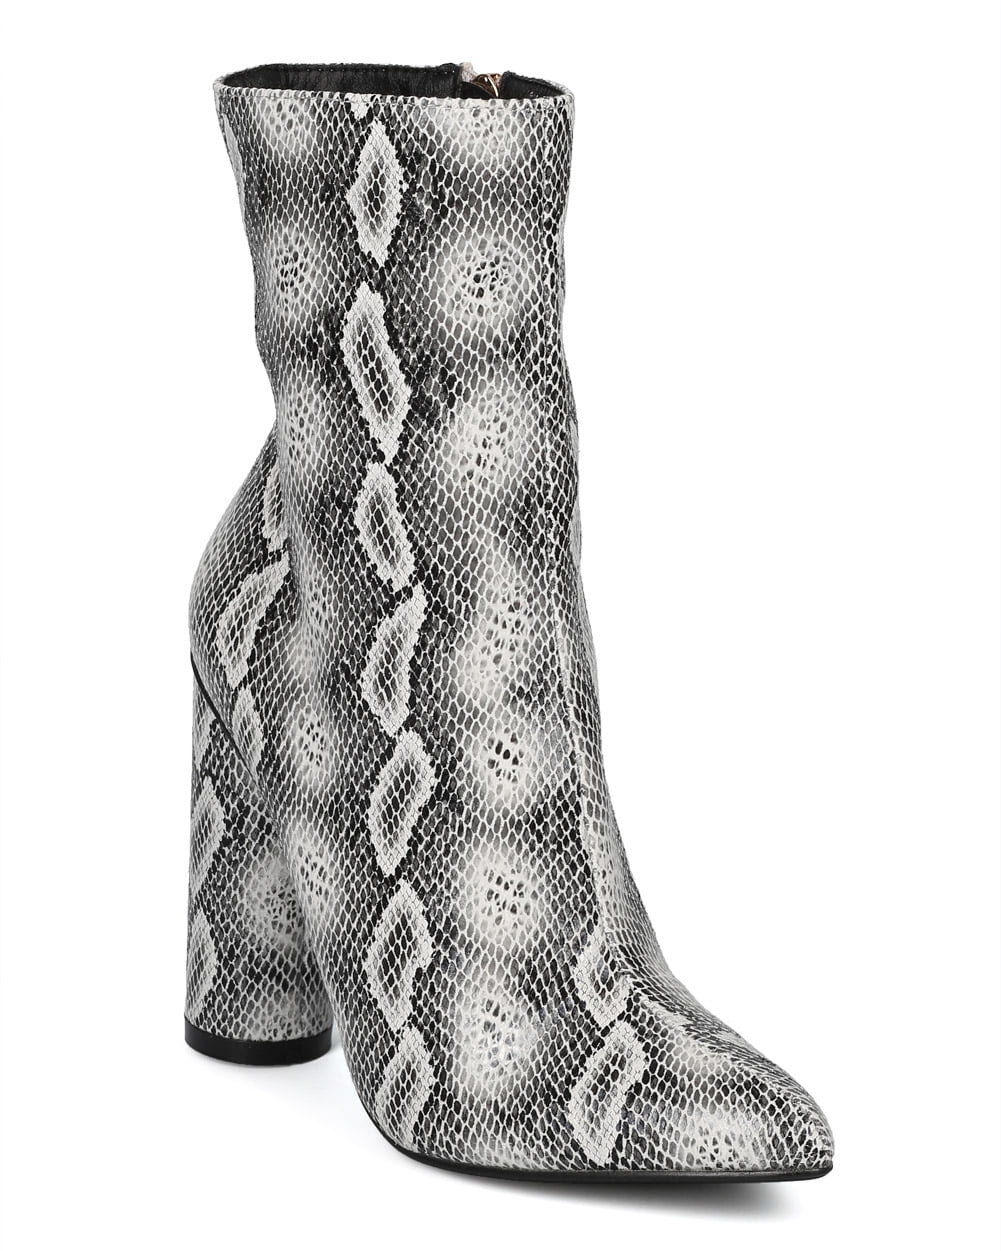 walmart snakeskin boots